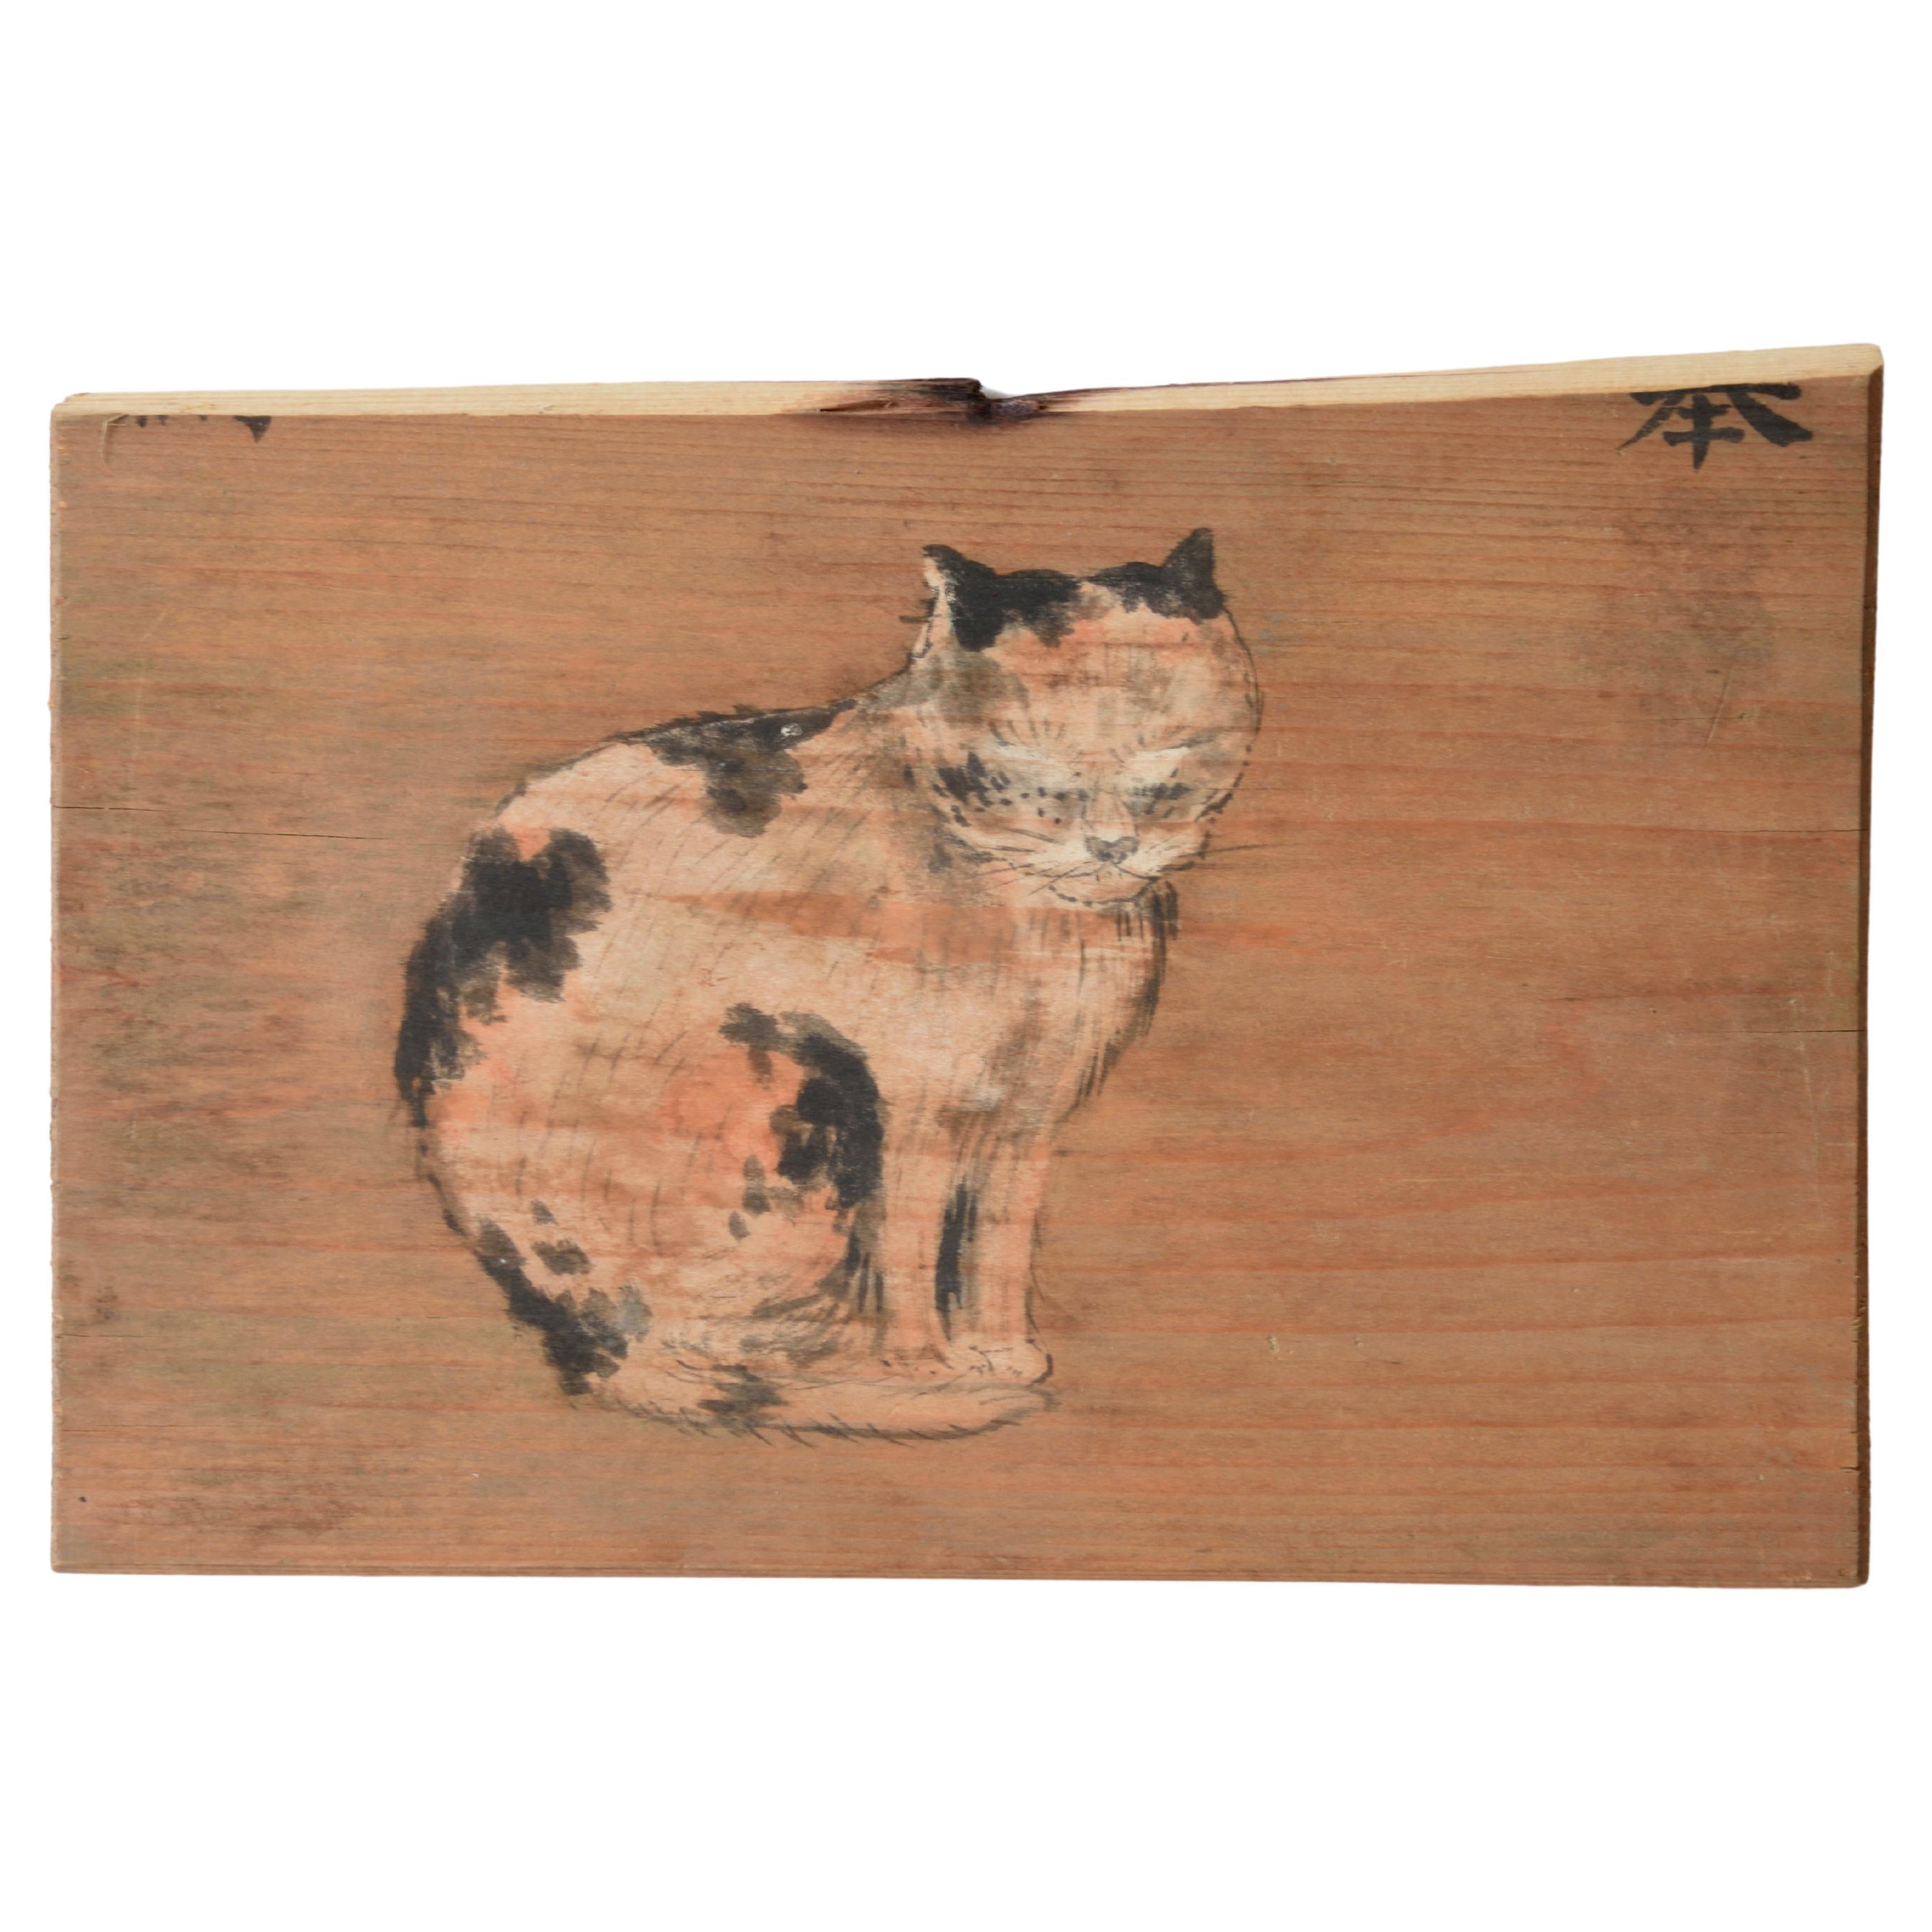 1927 Cat Japanese folk Ema Shrine votive wooden tablet